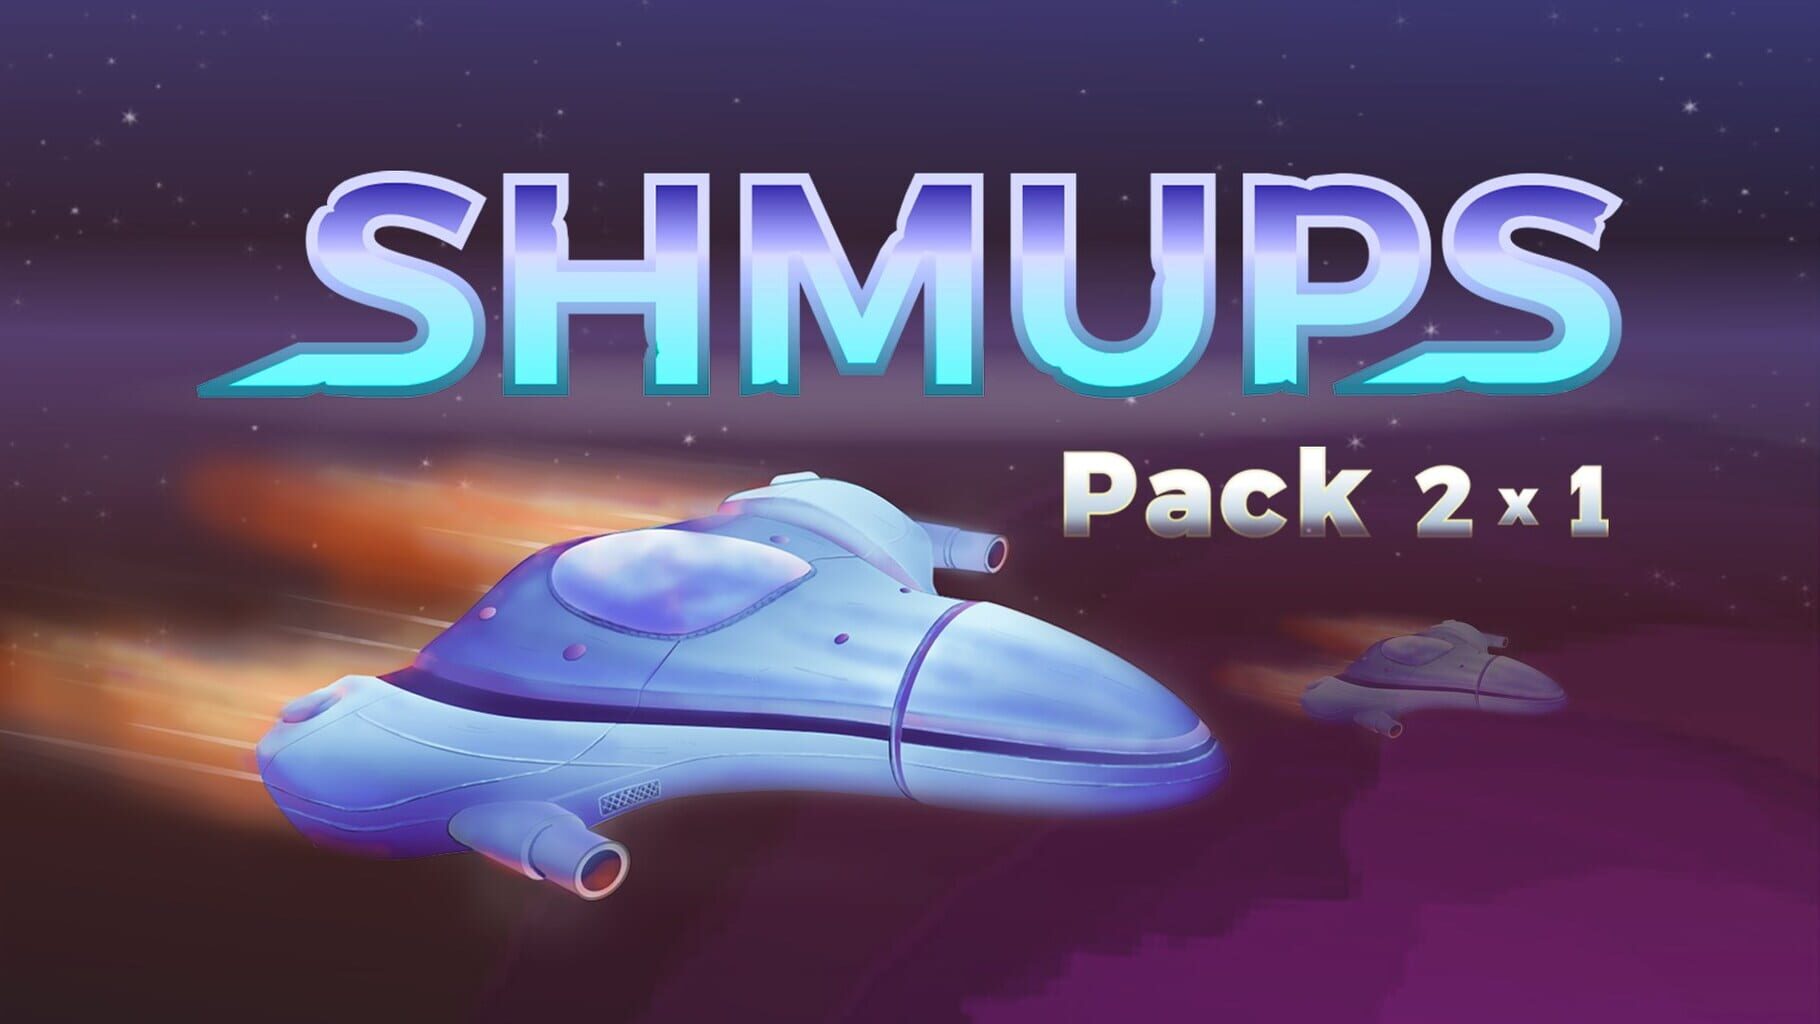 Arte - Shmups Pack 2x1